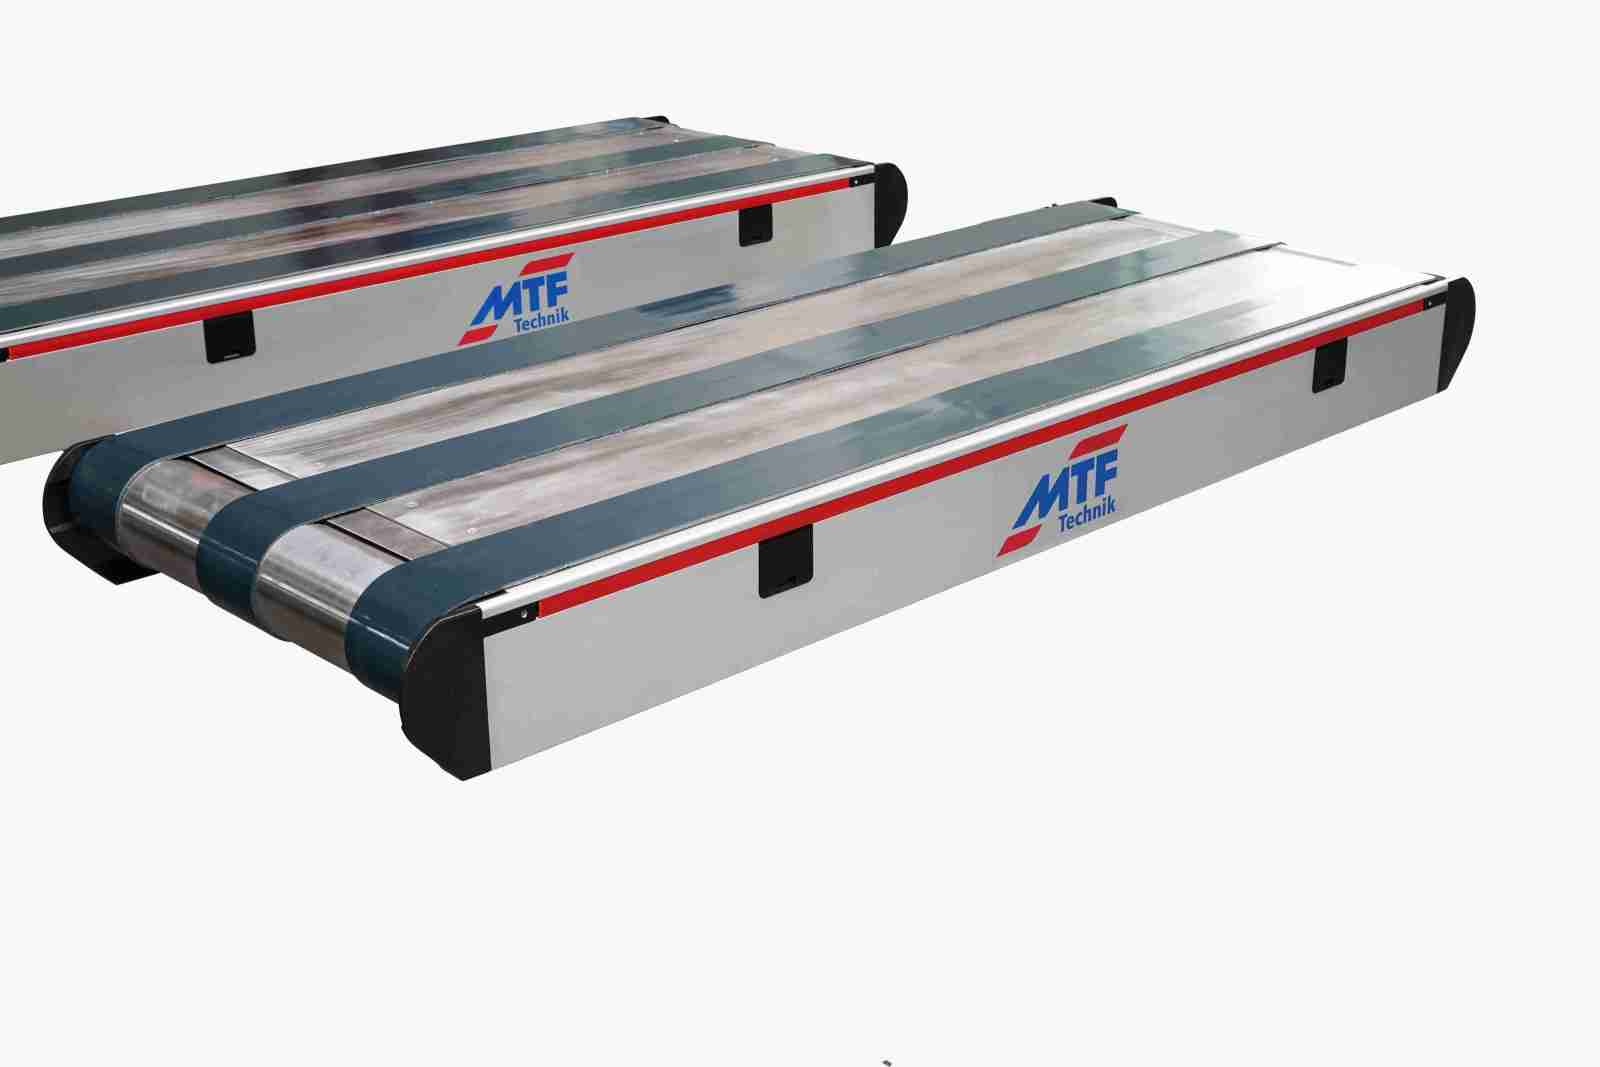 MTF Technik - Conveyor GL-Special, Serial No. 24912